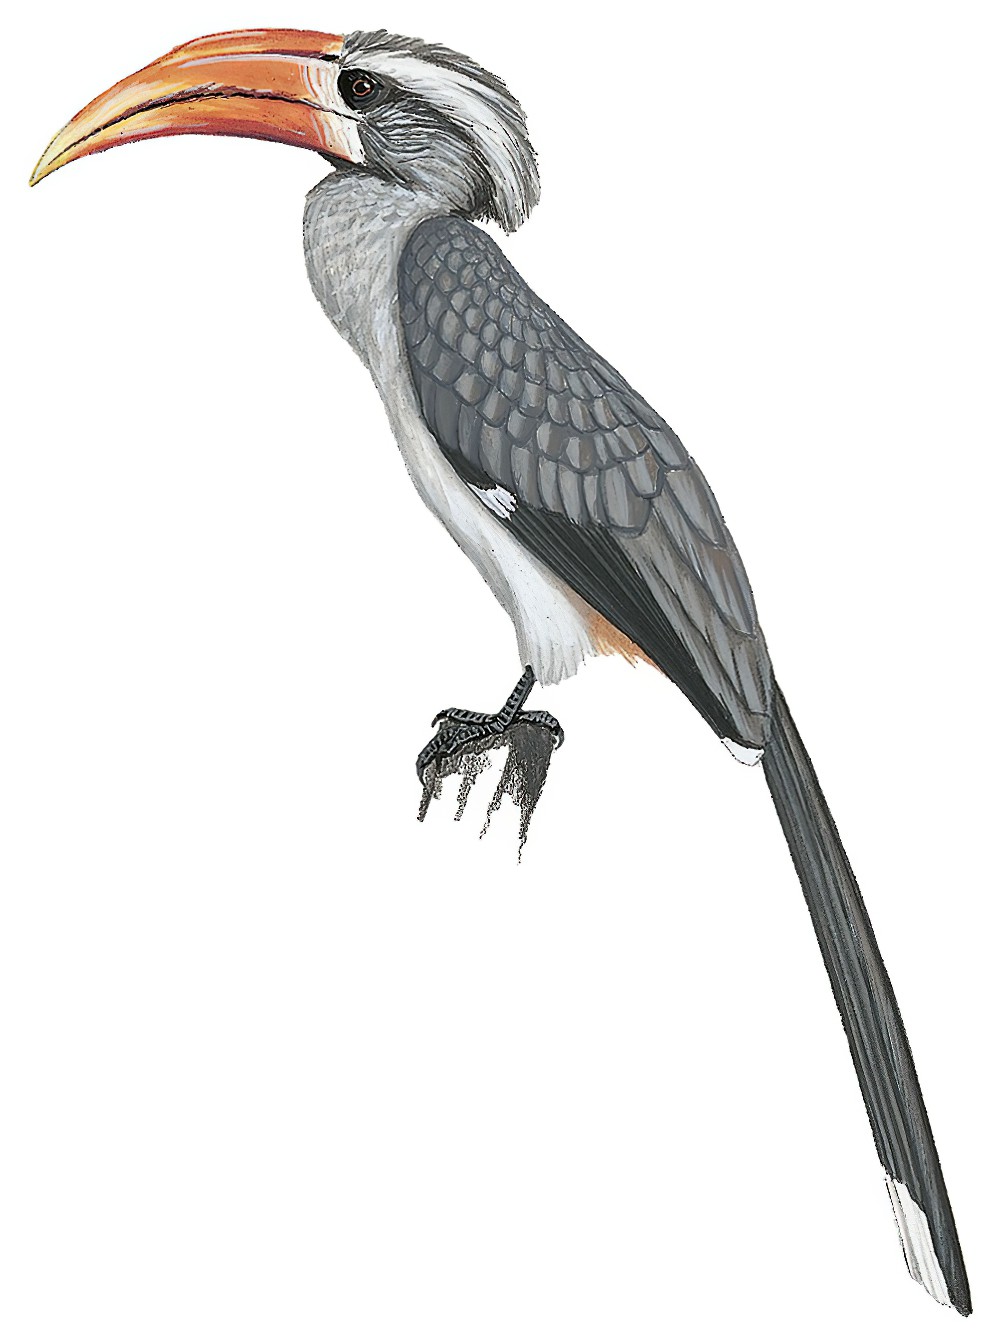 Malabar Gray Hornbill / Ocyceros griseus